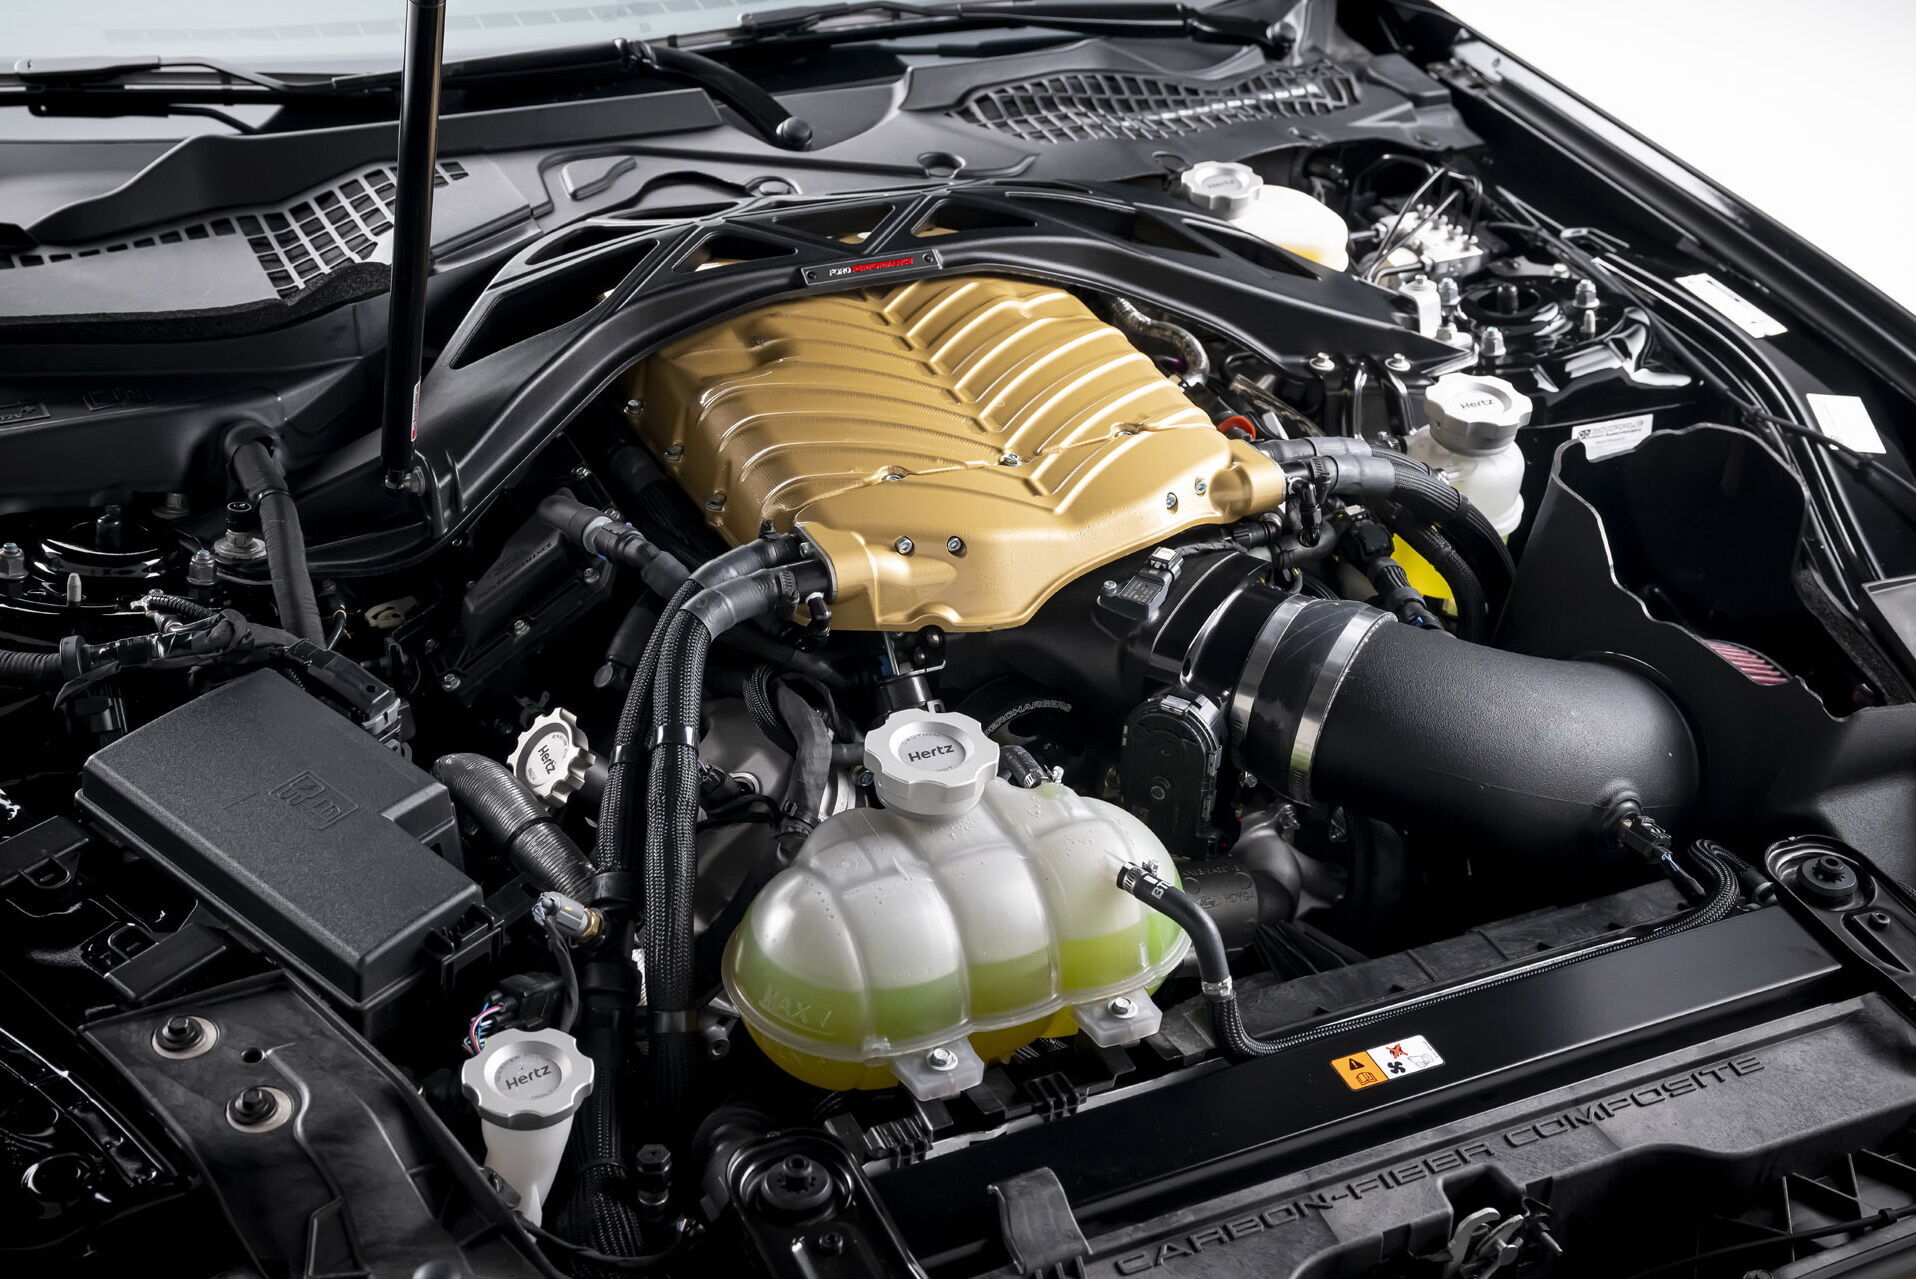 Автомобиль оснащен форсированным 5,2-литровым мотором, мощность которого увеличили с 770 до 912 л.с.